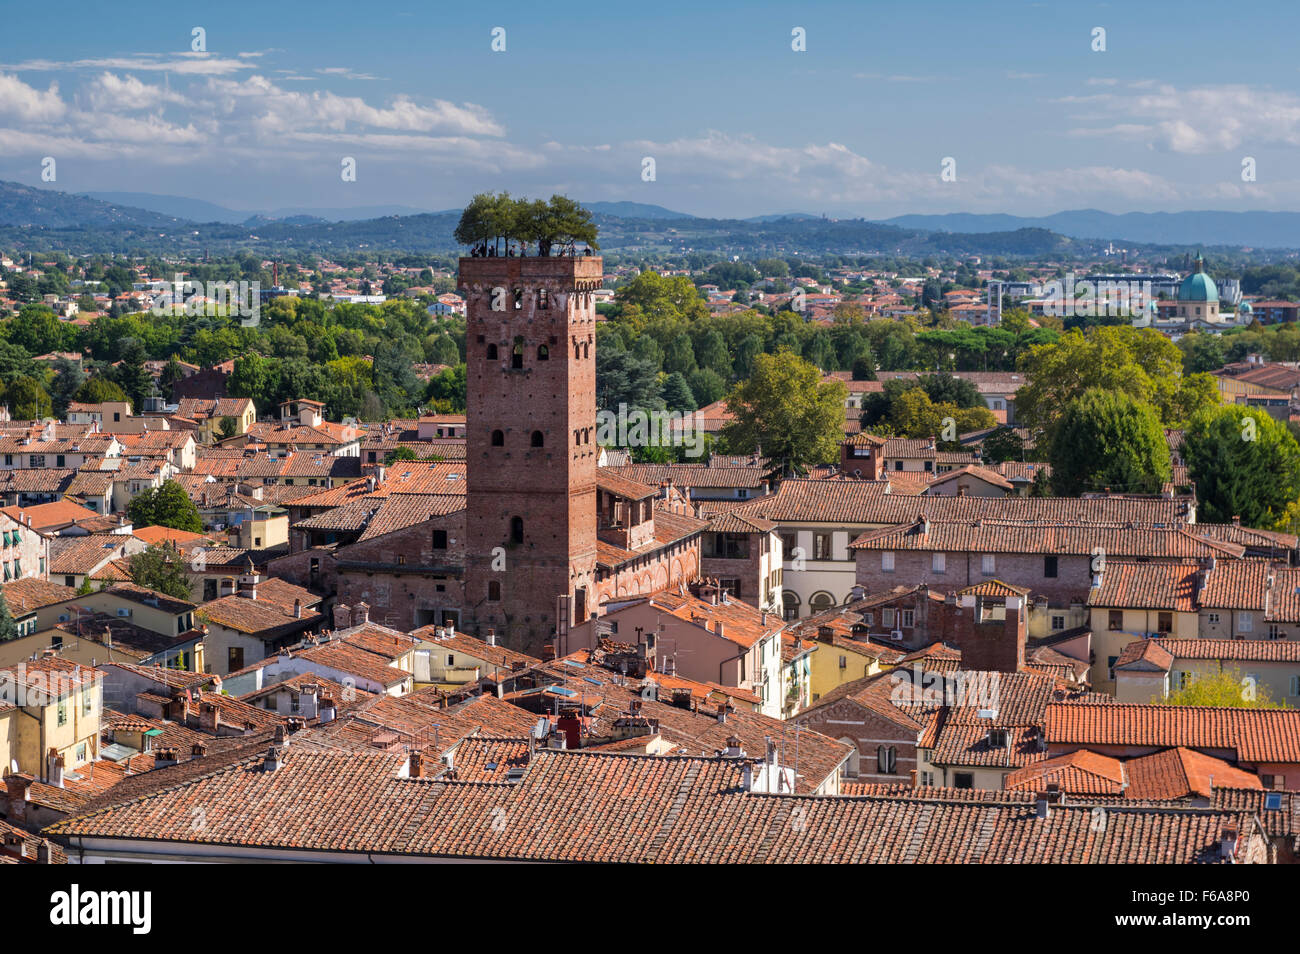 Blick über die Stadt Lucca, Toskana, Italien. Auffälligste Merkmal ist der mittelalterliche Torre Guinigi Turm mit Bäumen auf seiner Spitze. Stockfoto